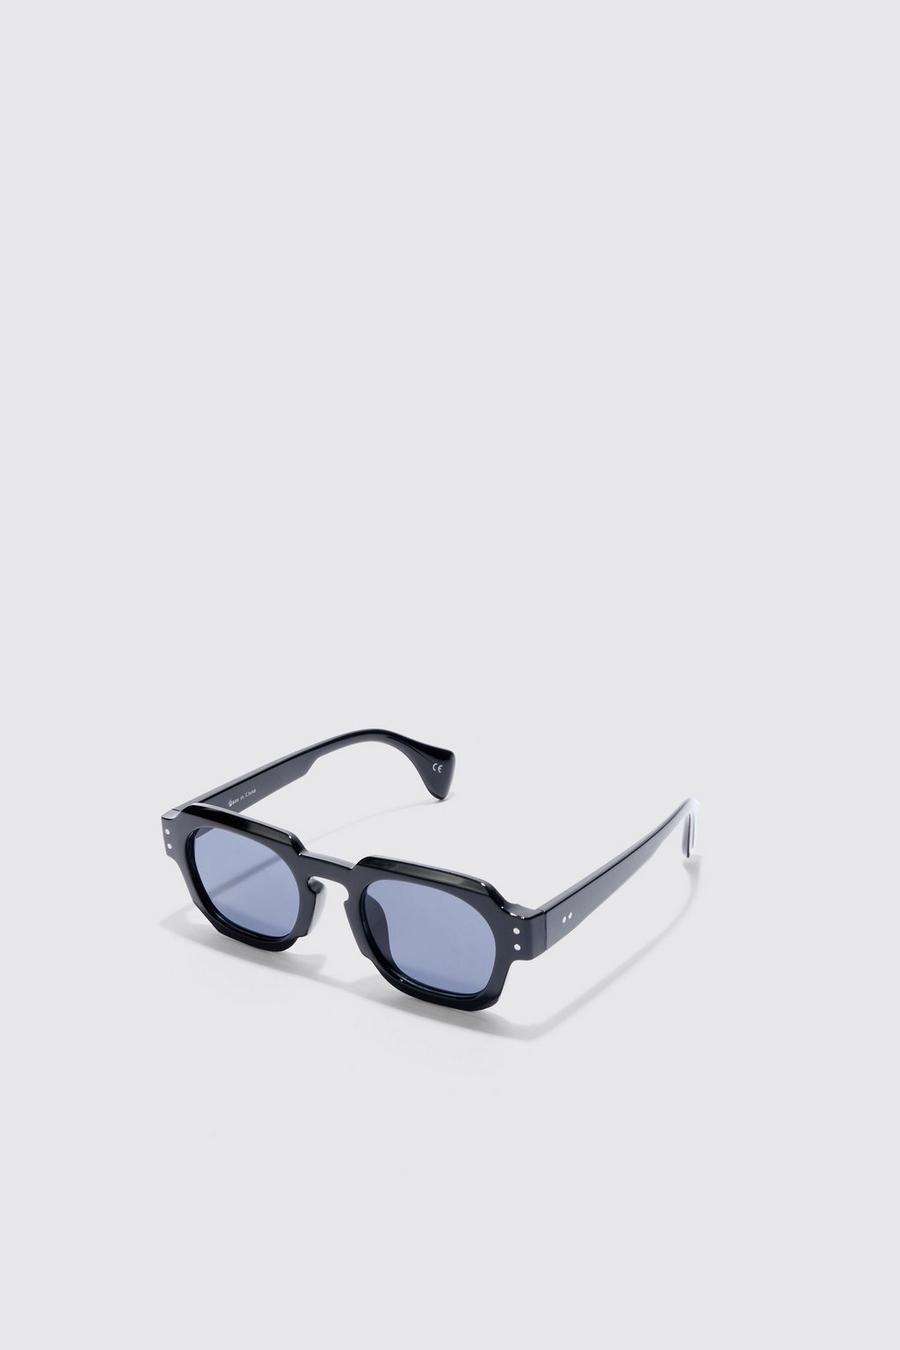 Black Round Plastic Sunglasses